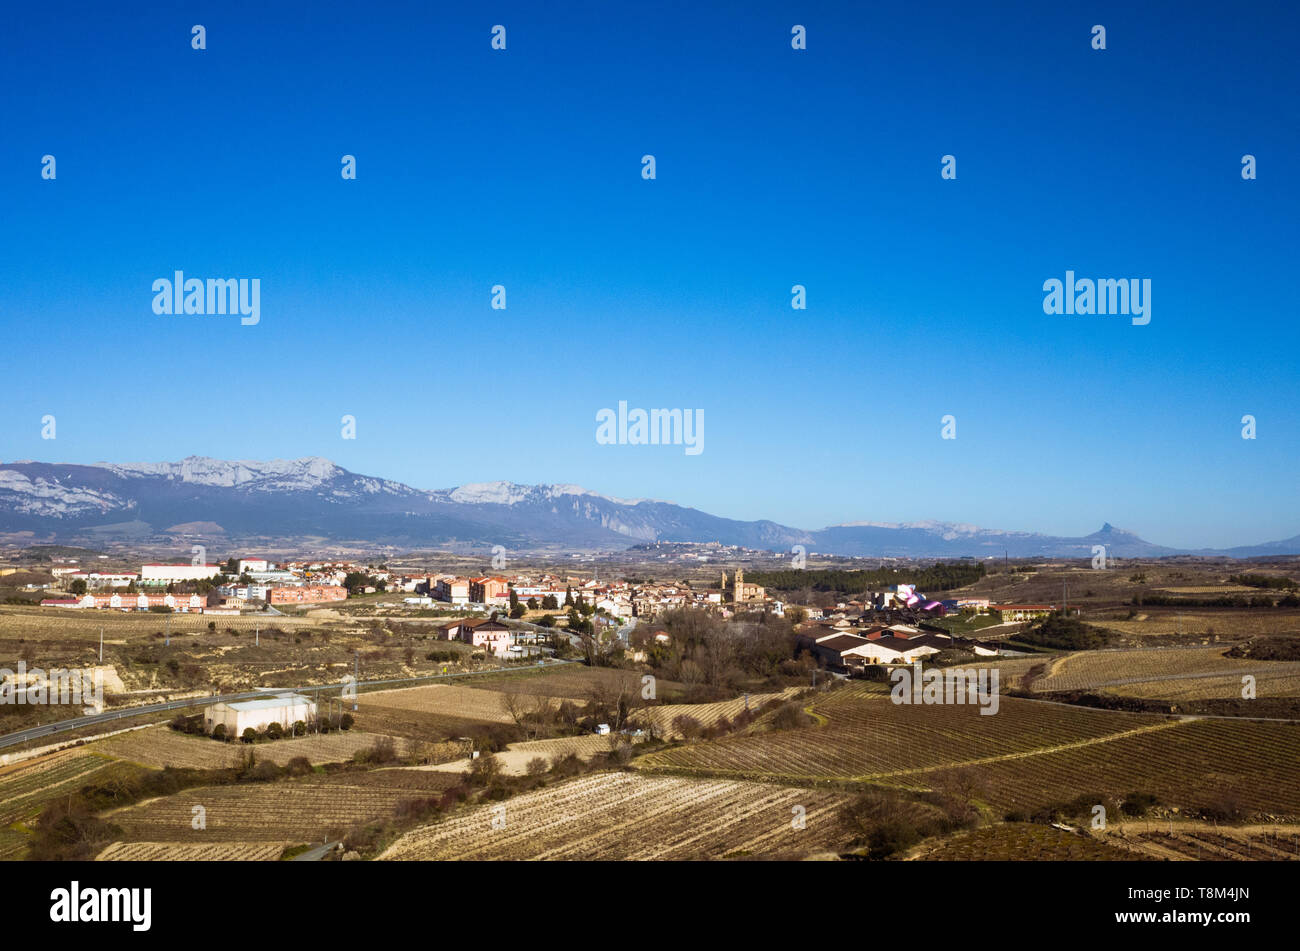 Elciego, Provinz Álava, Baskenland, Spanien: Blick auf Elciego Dorf in der weltberühmten Rioja Wein - Produktion Region. Stockfoto